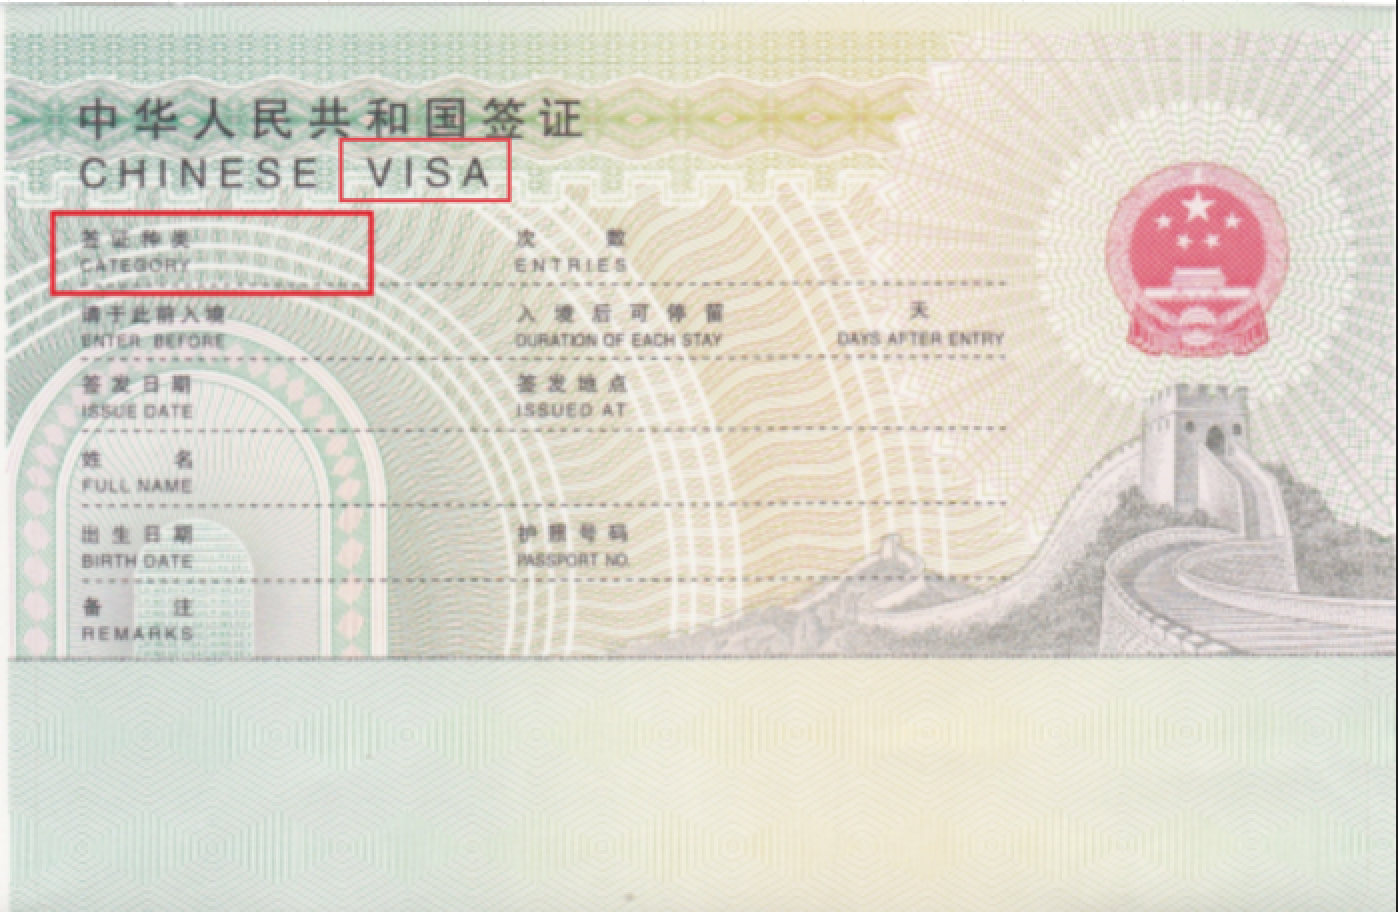 中国签证、居留许可和永久居留的区别是？